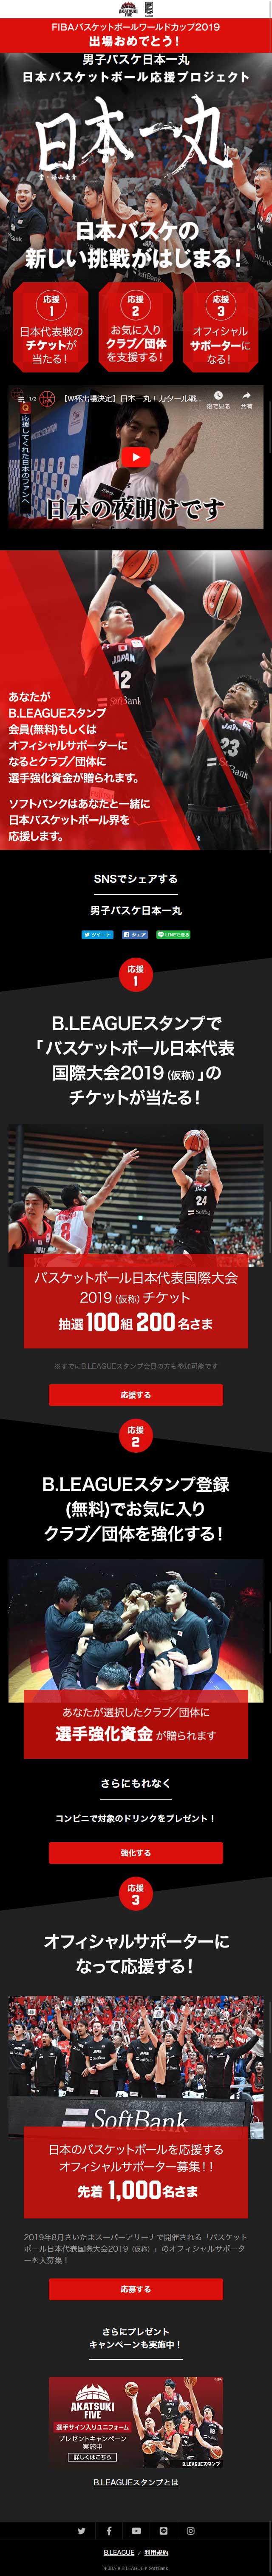 日本バスケットボール応援プロジェクト_sp_1